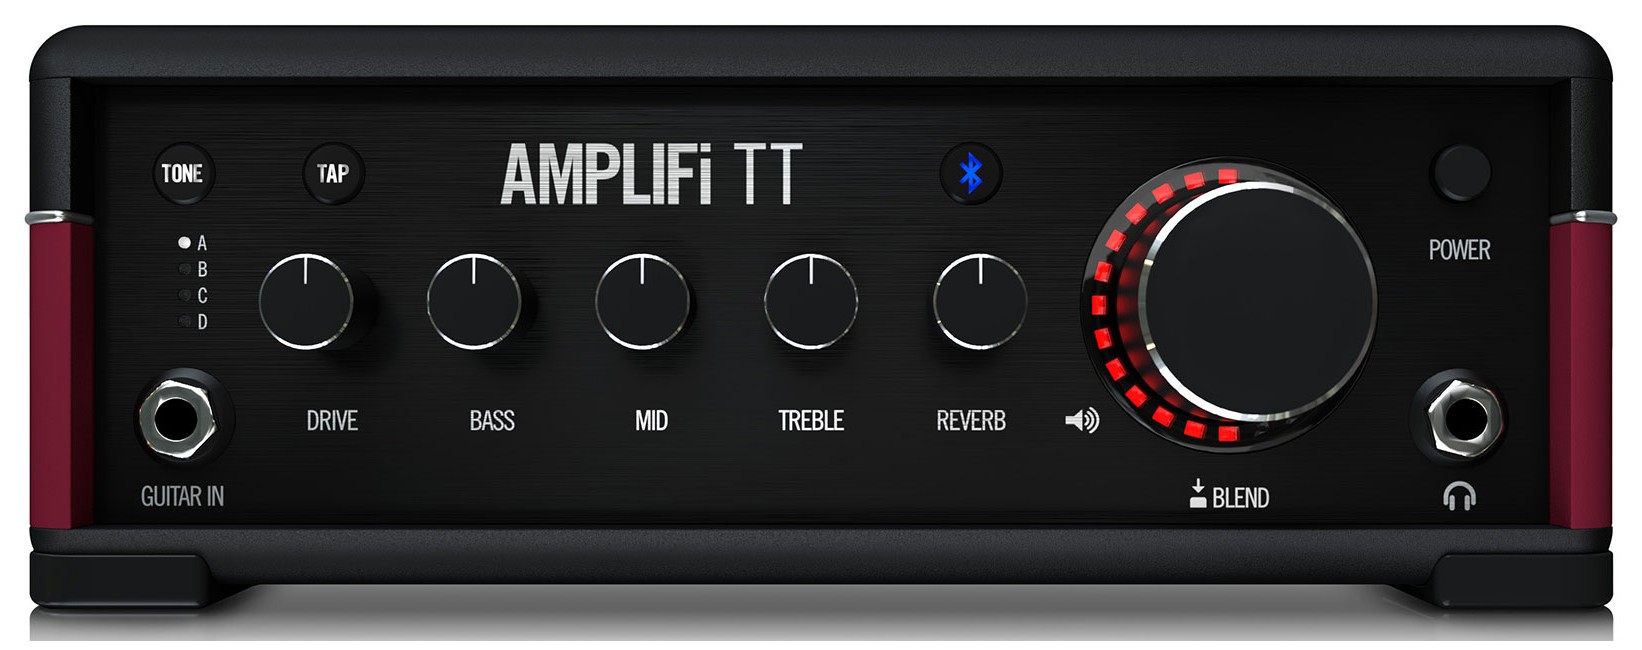 Line6 - AMPLIFI TT - Guitar Multi Effekt Processor